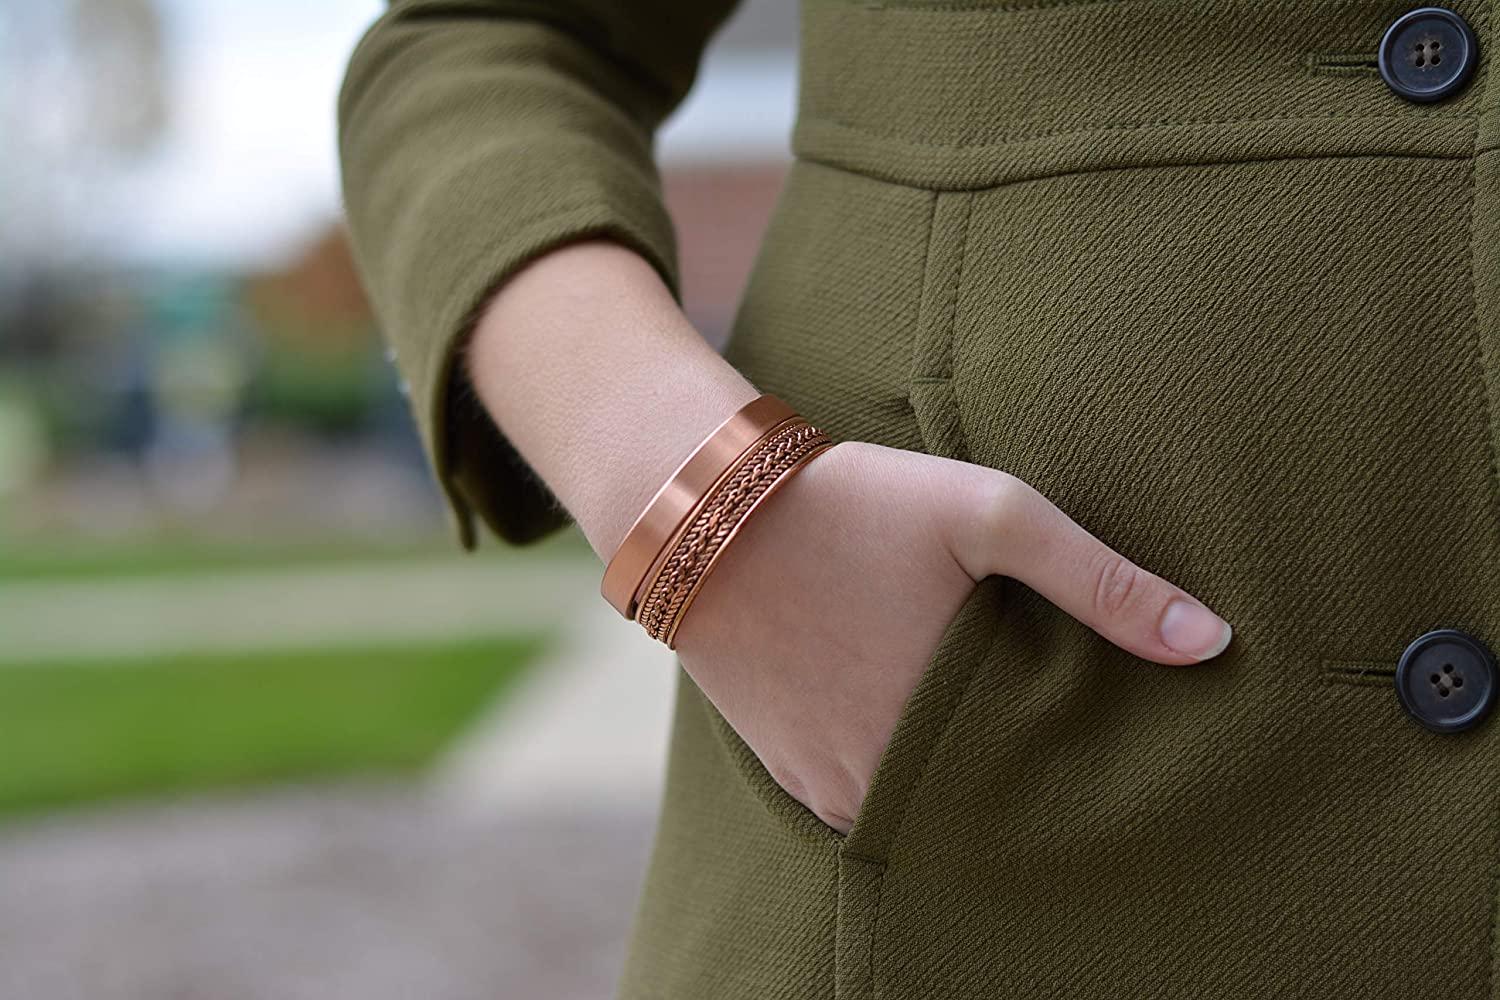 Solid copper magnetic bracelet, copper bracelets for arthritis